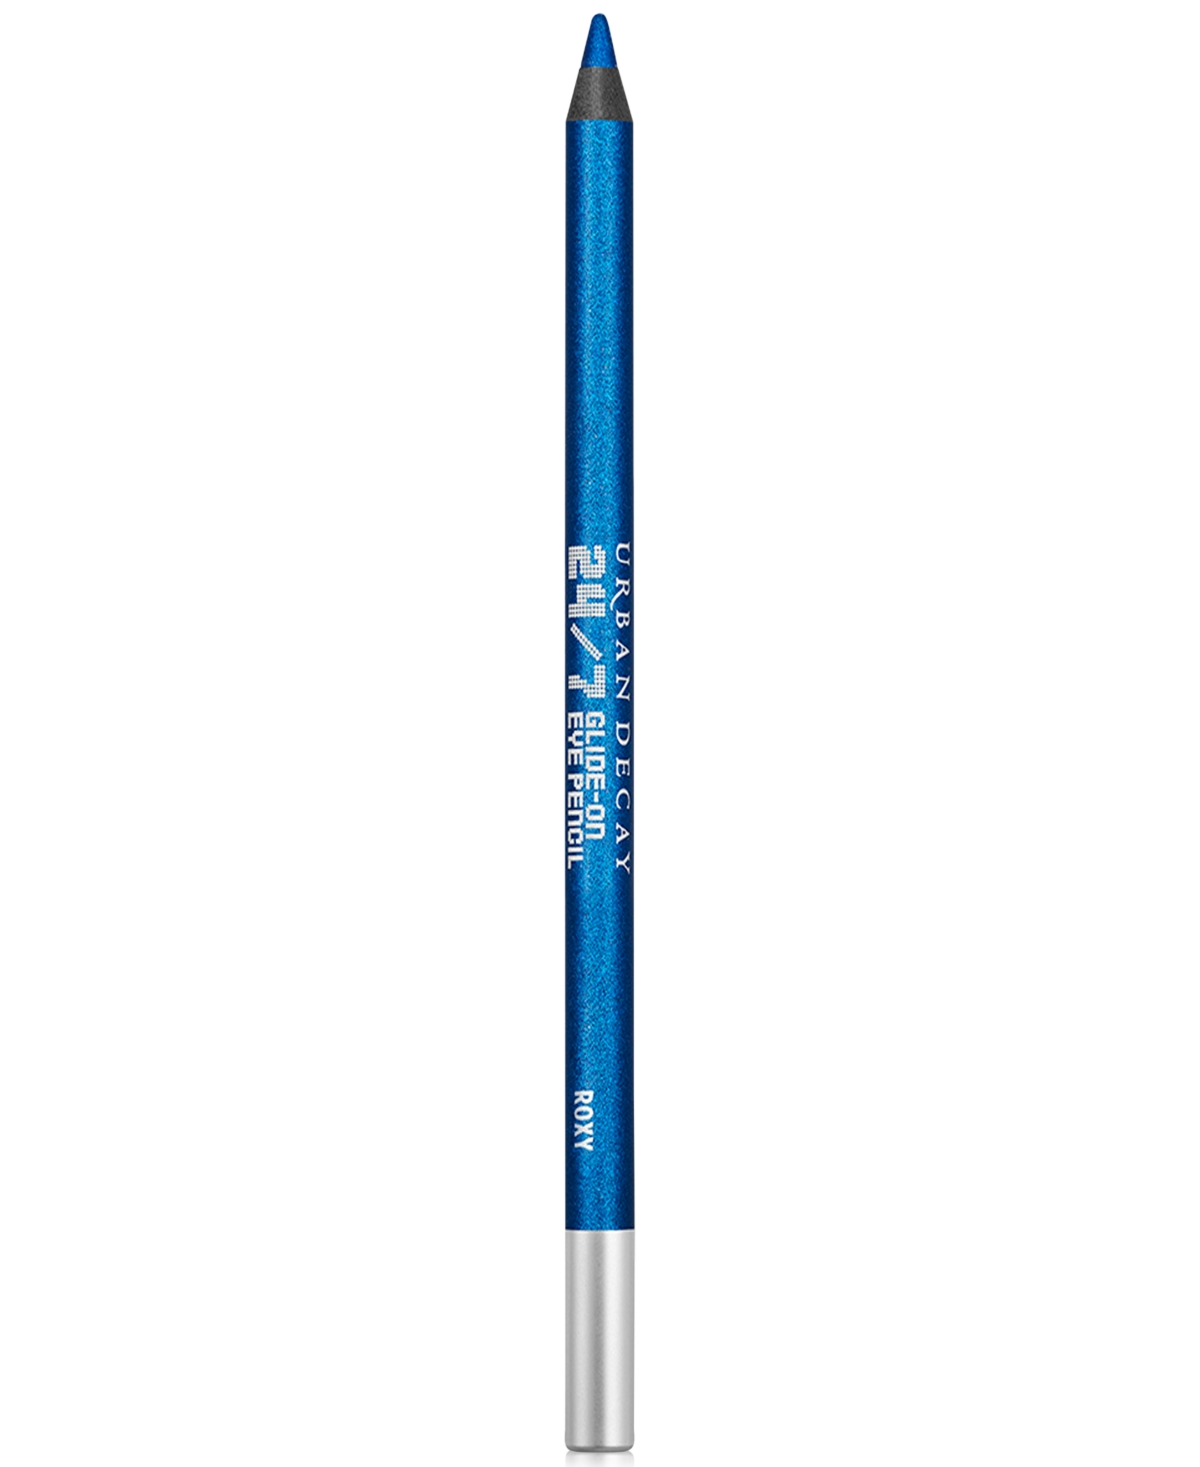 Urban Decay 24/7 Glide-on Waterproof Eyeliner Pencil In Roxy (metallic Blue)